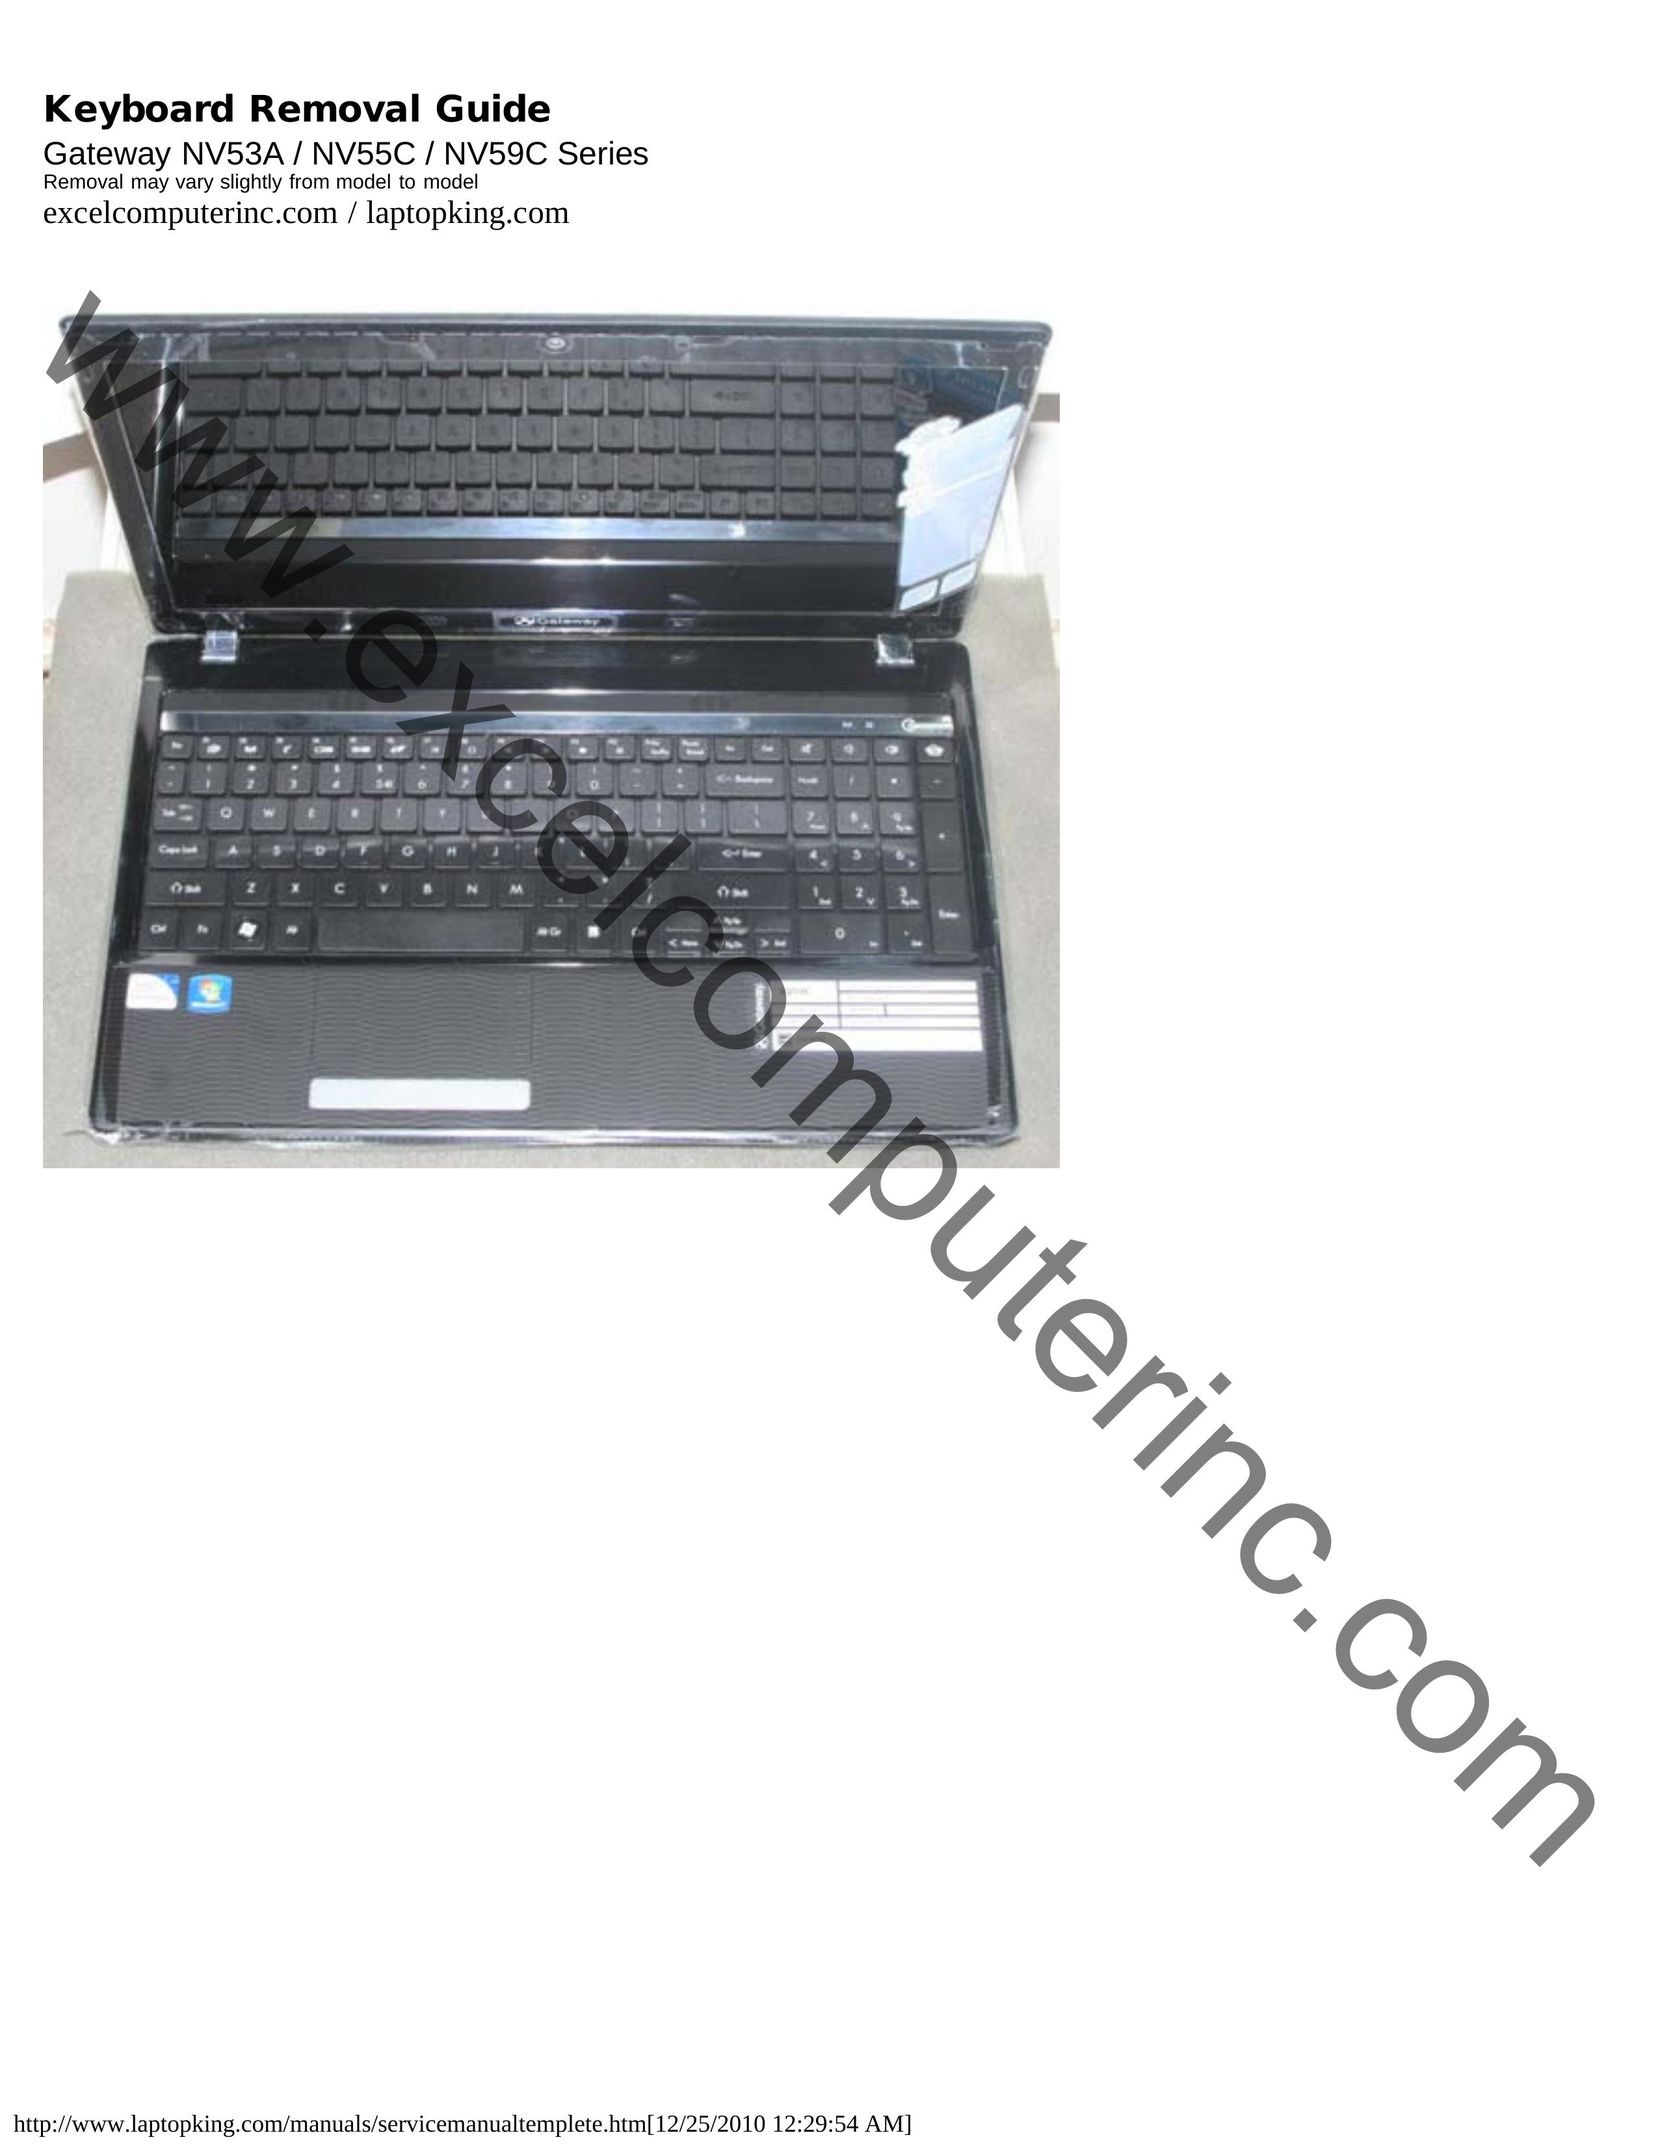 Gateway NV55C Computer Keyboard User Manual